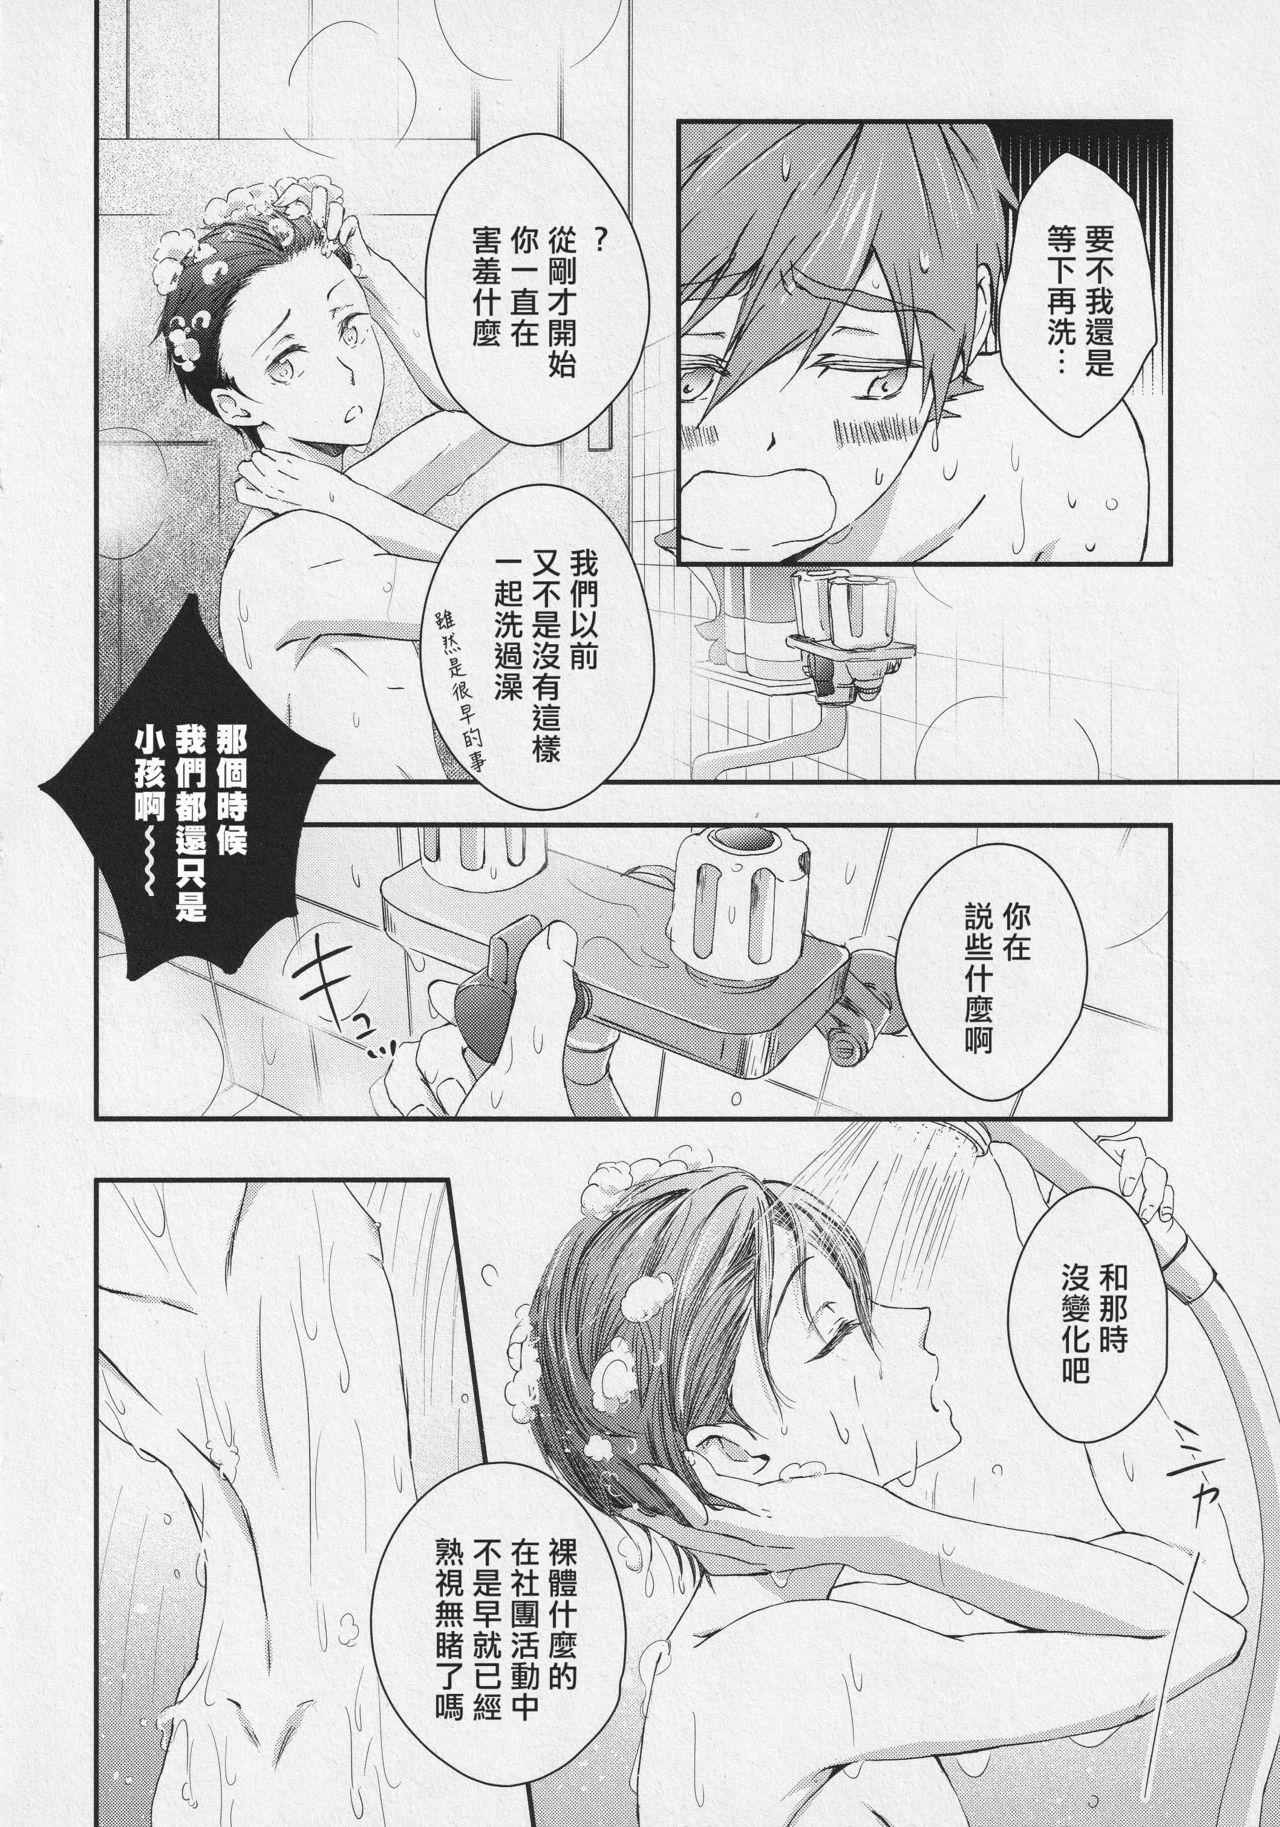 Str8 Naisho no Yofukashi - Free Licking - Page 7